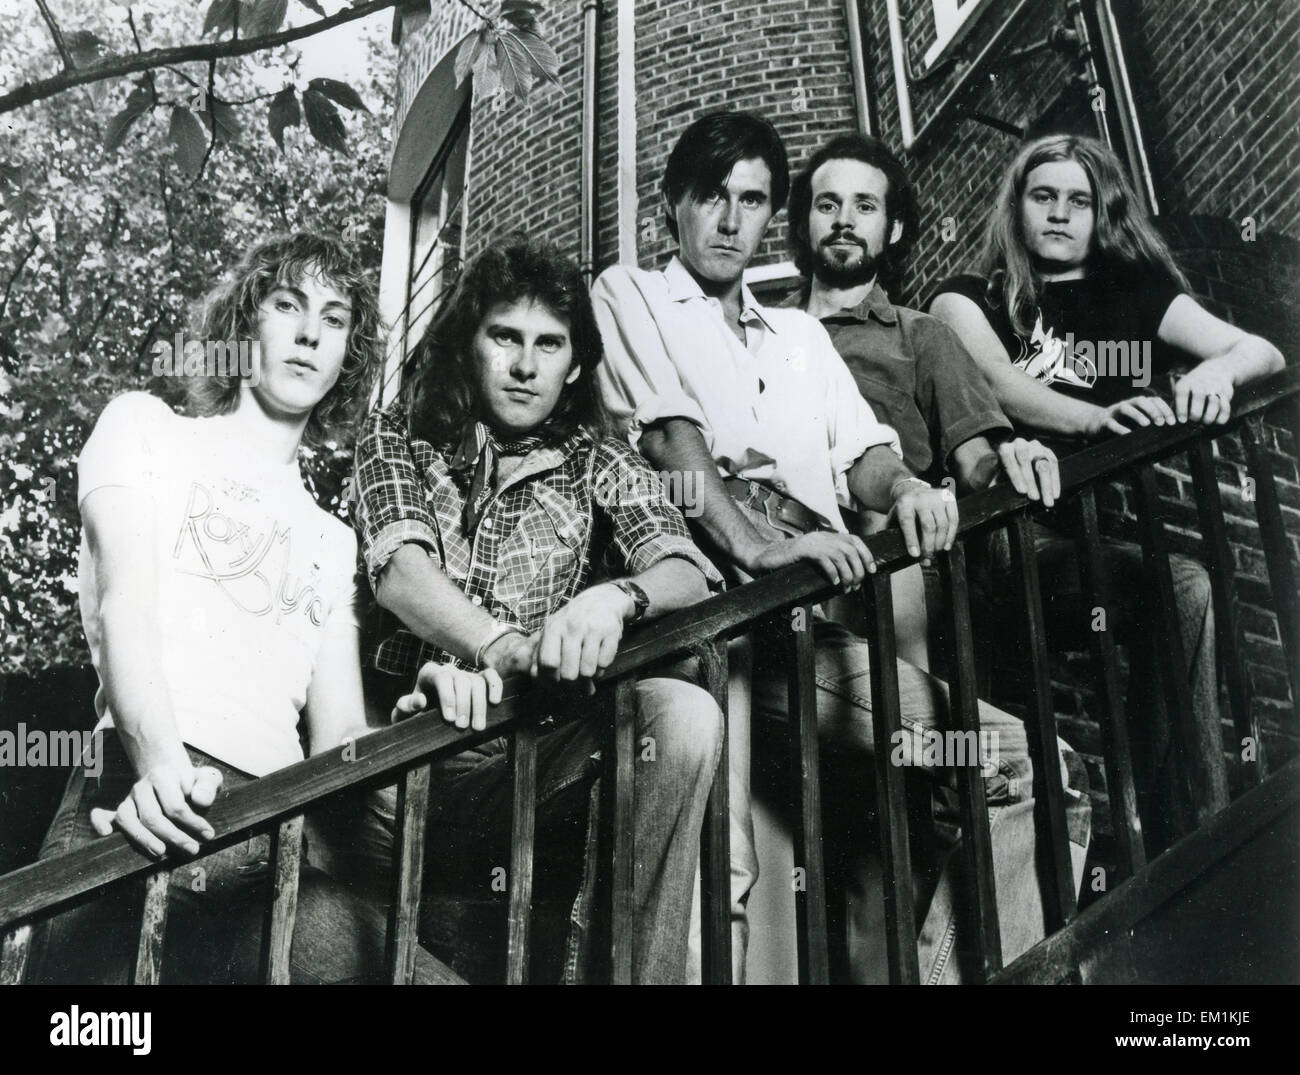 Promotion de ROXY MUSIC photo de groupe rock britannique vers 2002 Banque D'Images